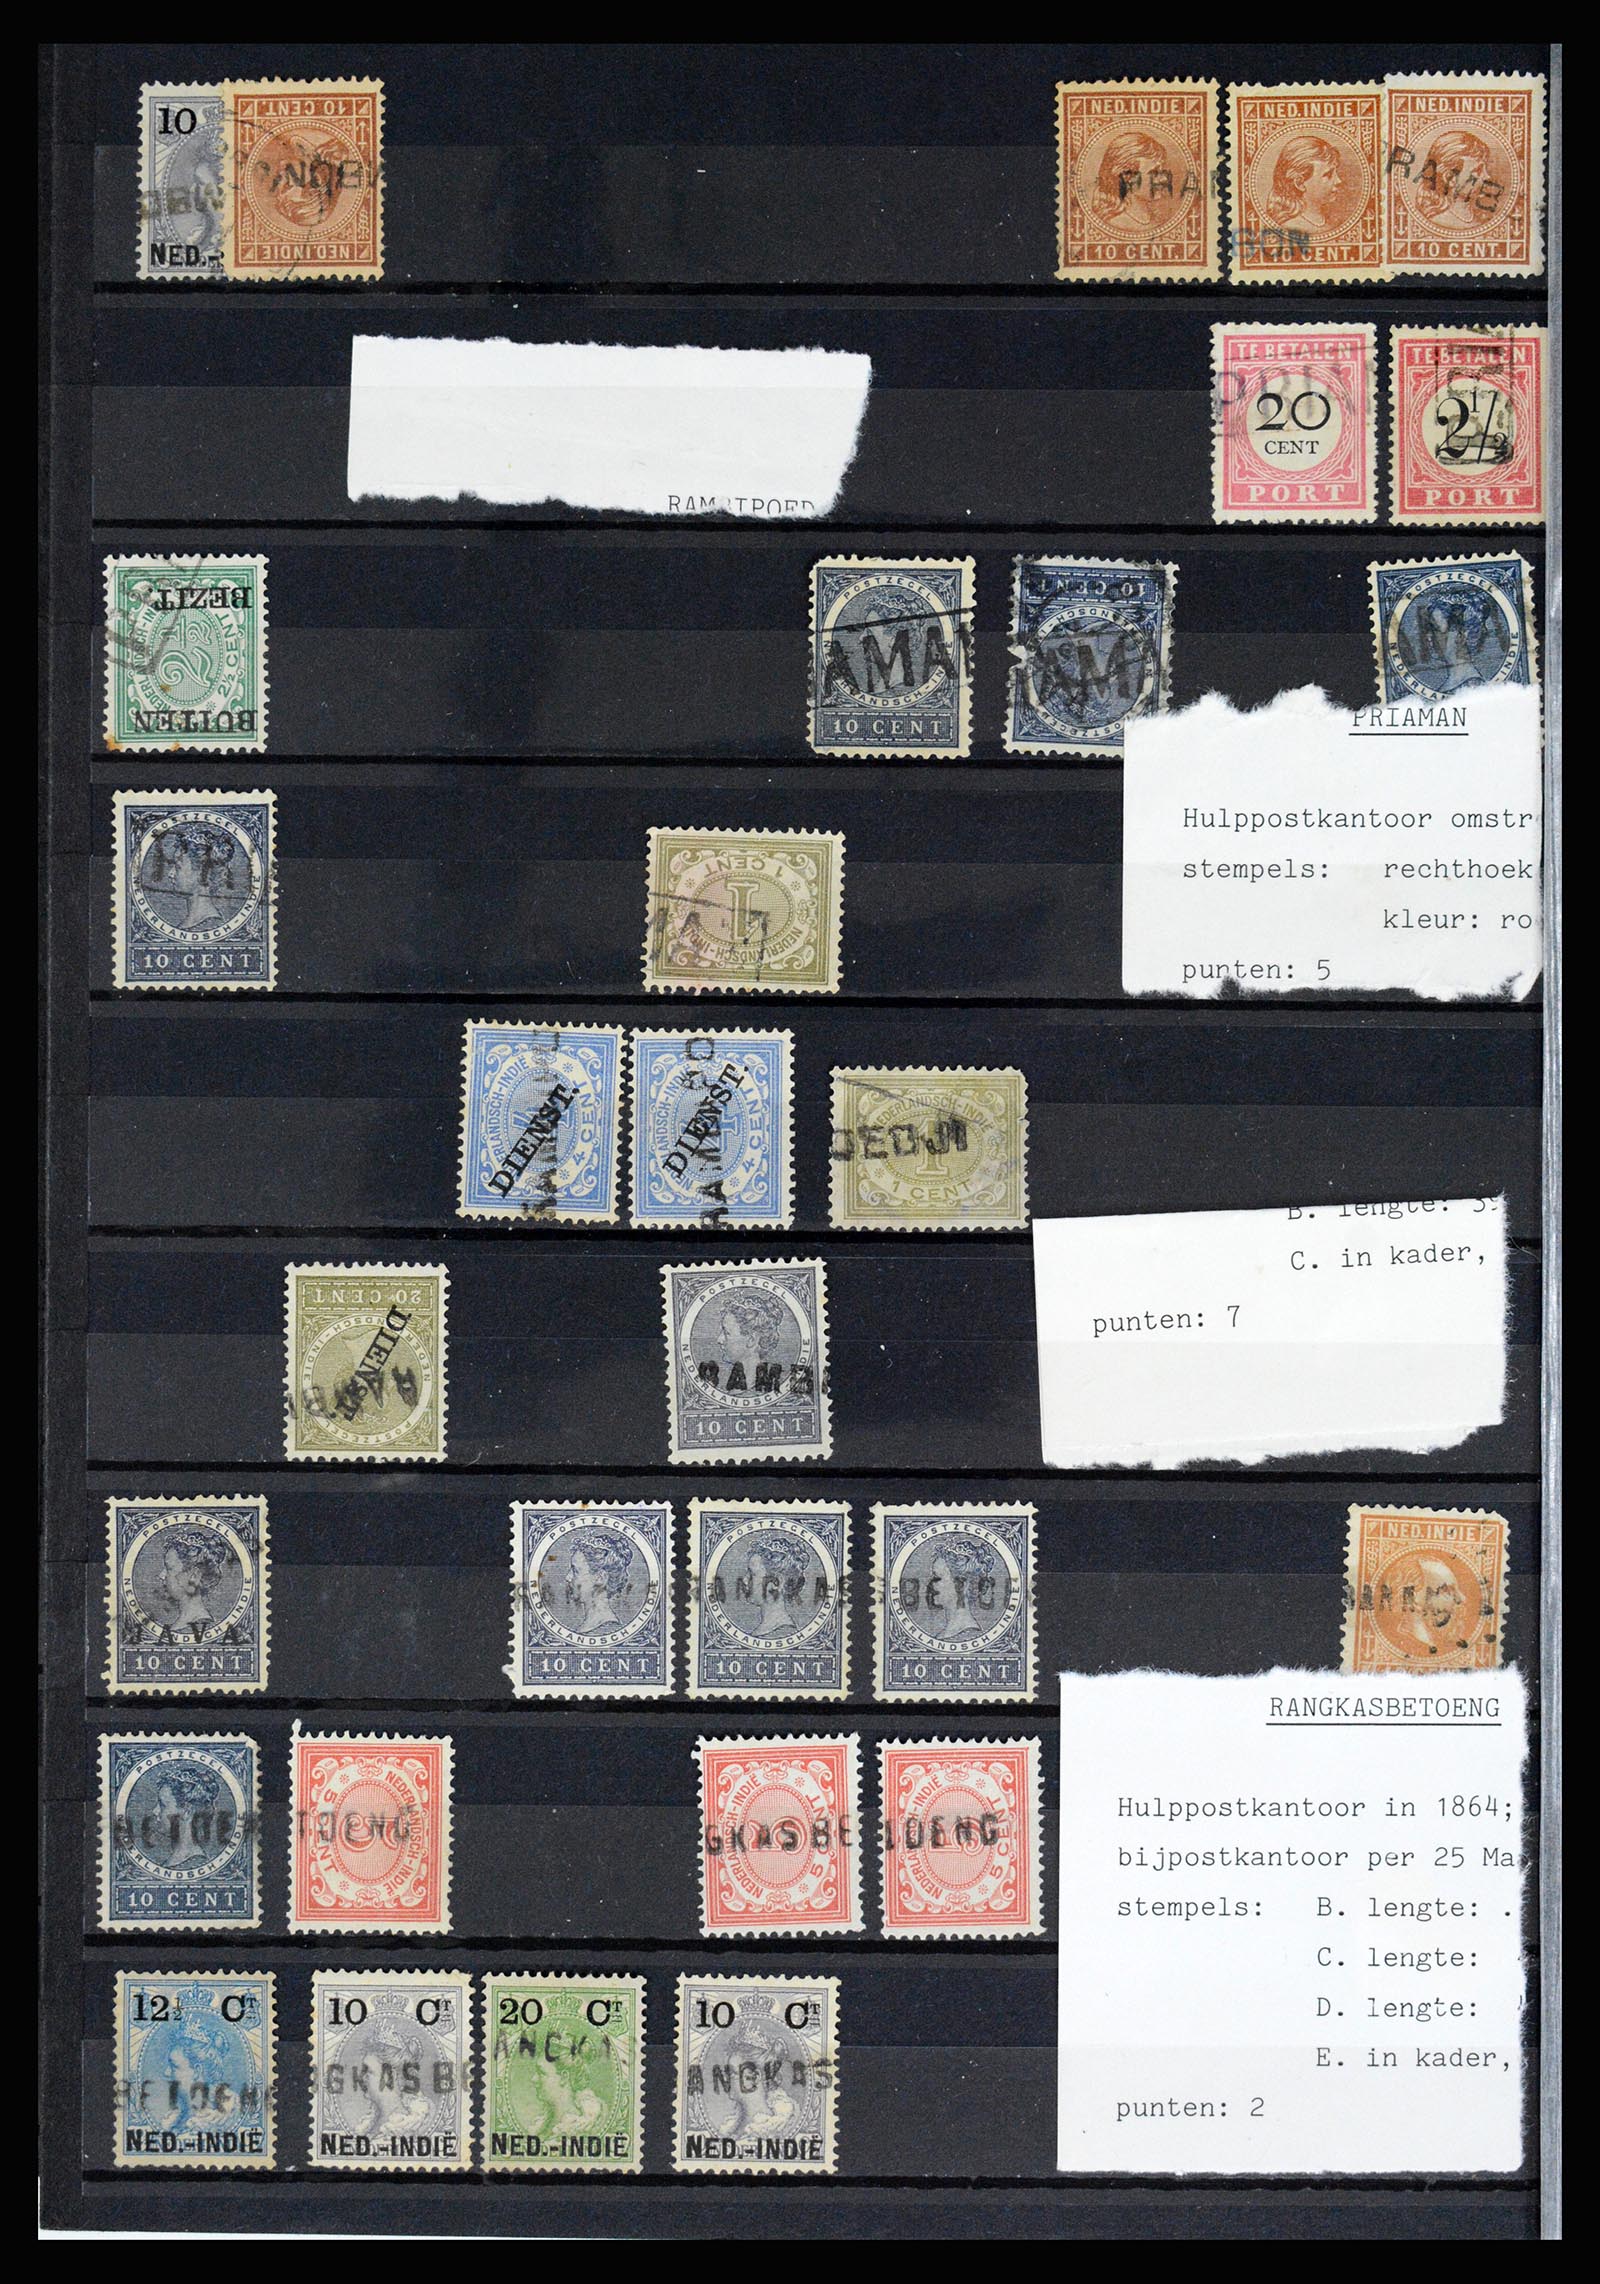 36512 060 - Stamp collection 36512 Nederlands Indië stempels 1872-1930.